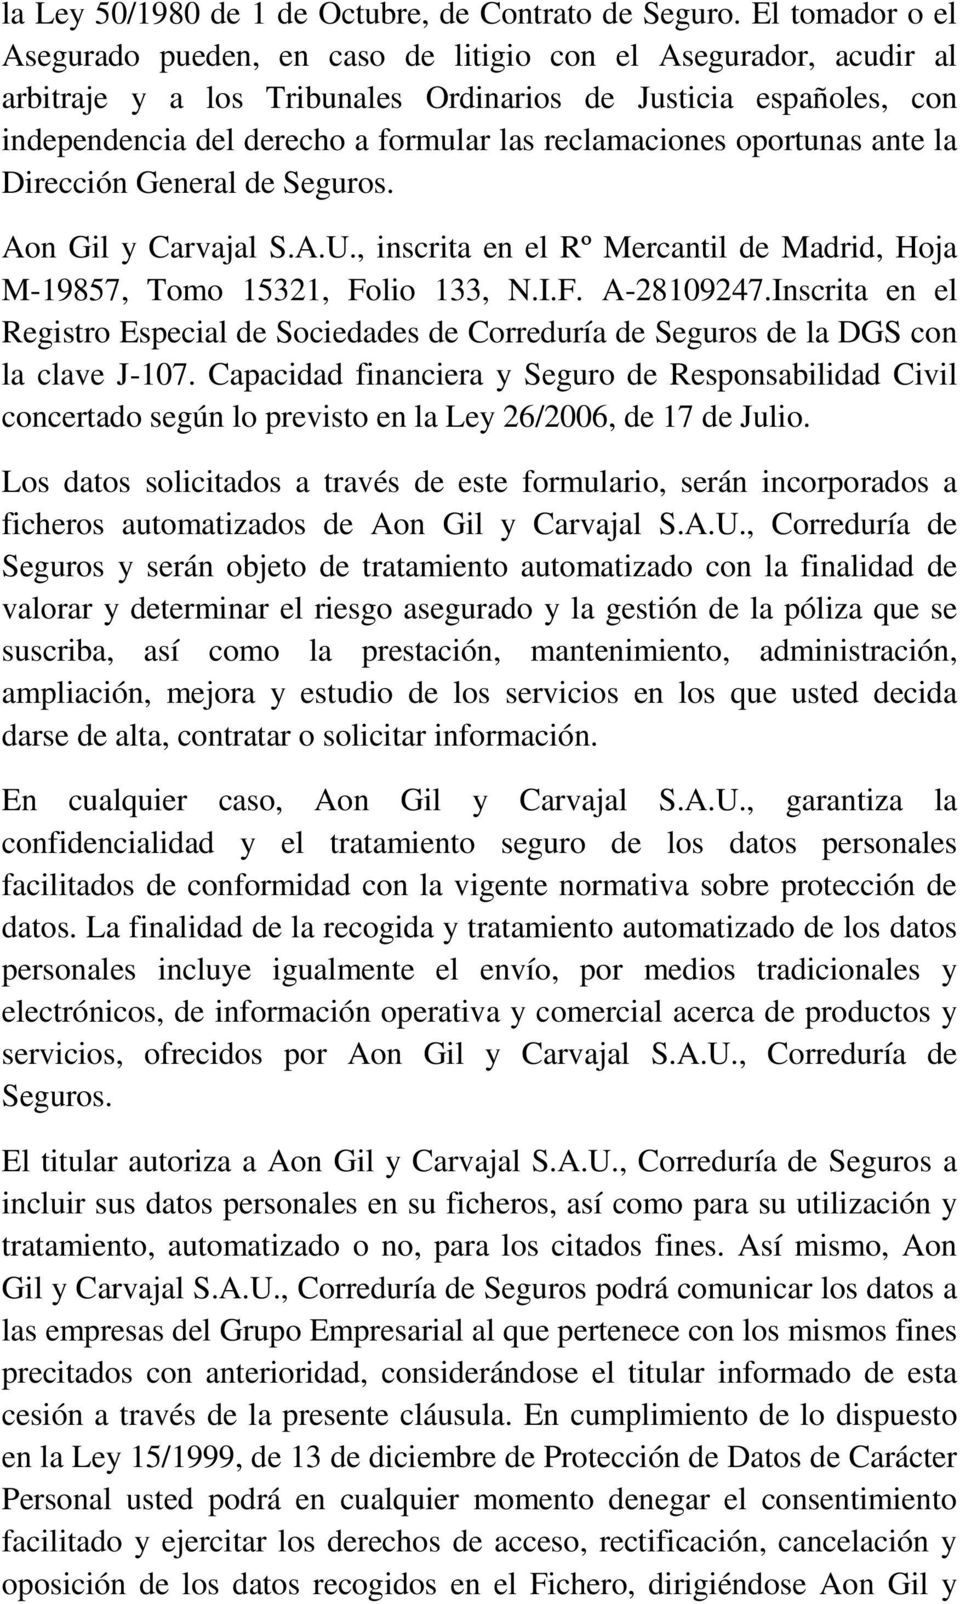 reclamaciones oportunas ante la Dirección General de Seguros. Aon Gil y Carvajal S.A.U., inscrita en el Rº Mercantil de Madrid, Hoja M-19857, Tomo 15321, Folio 133, N.I.F. A-28109247.